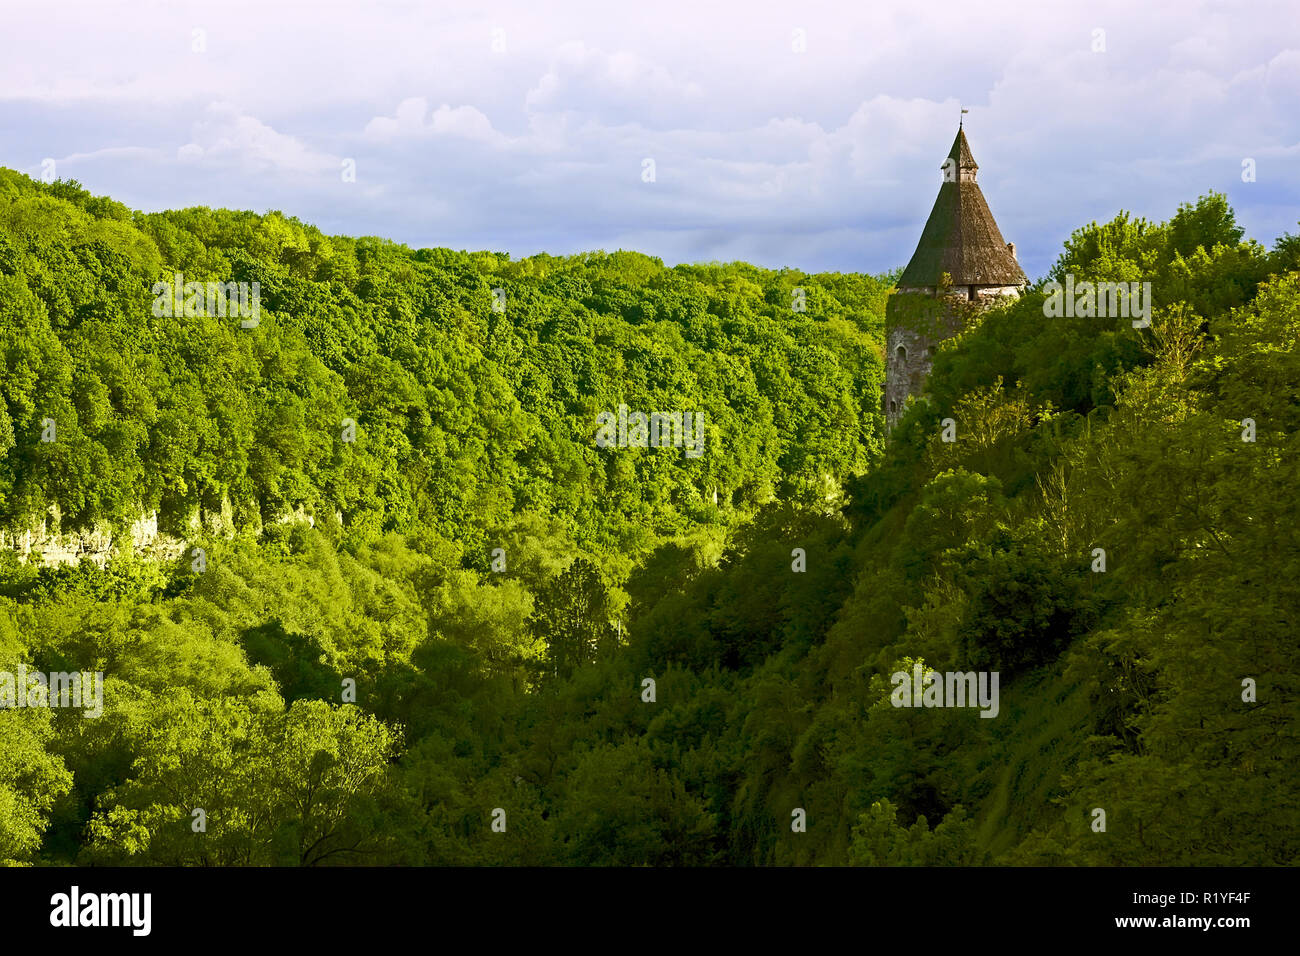 Forte pente verte près de la rivière Smotrych dans la ville Kamianets-Podilsky, Ukraine. La fortification médiévale sur les rochers Banque D'Images